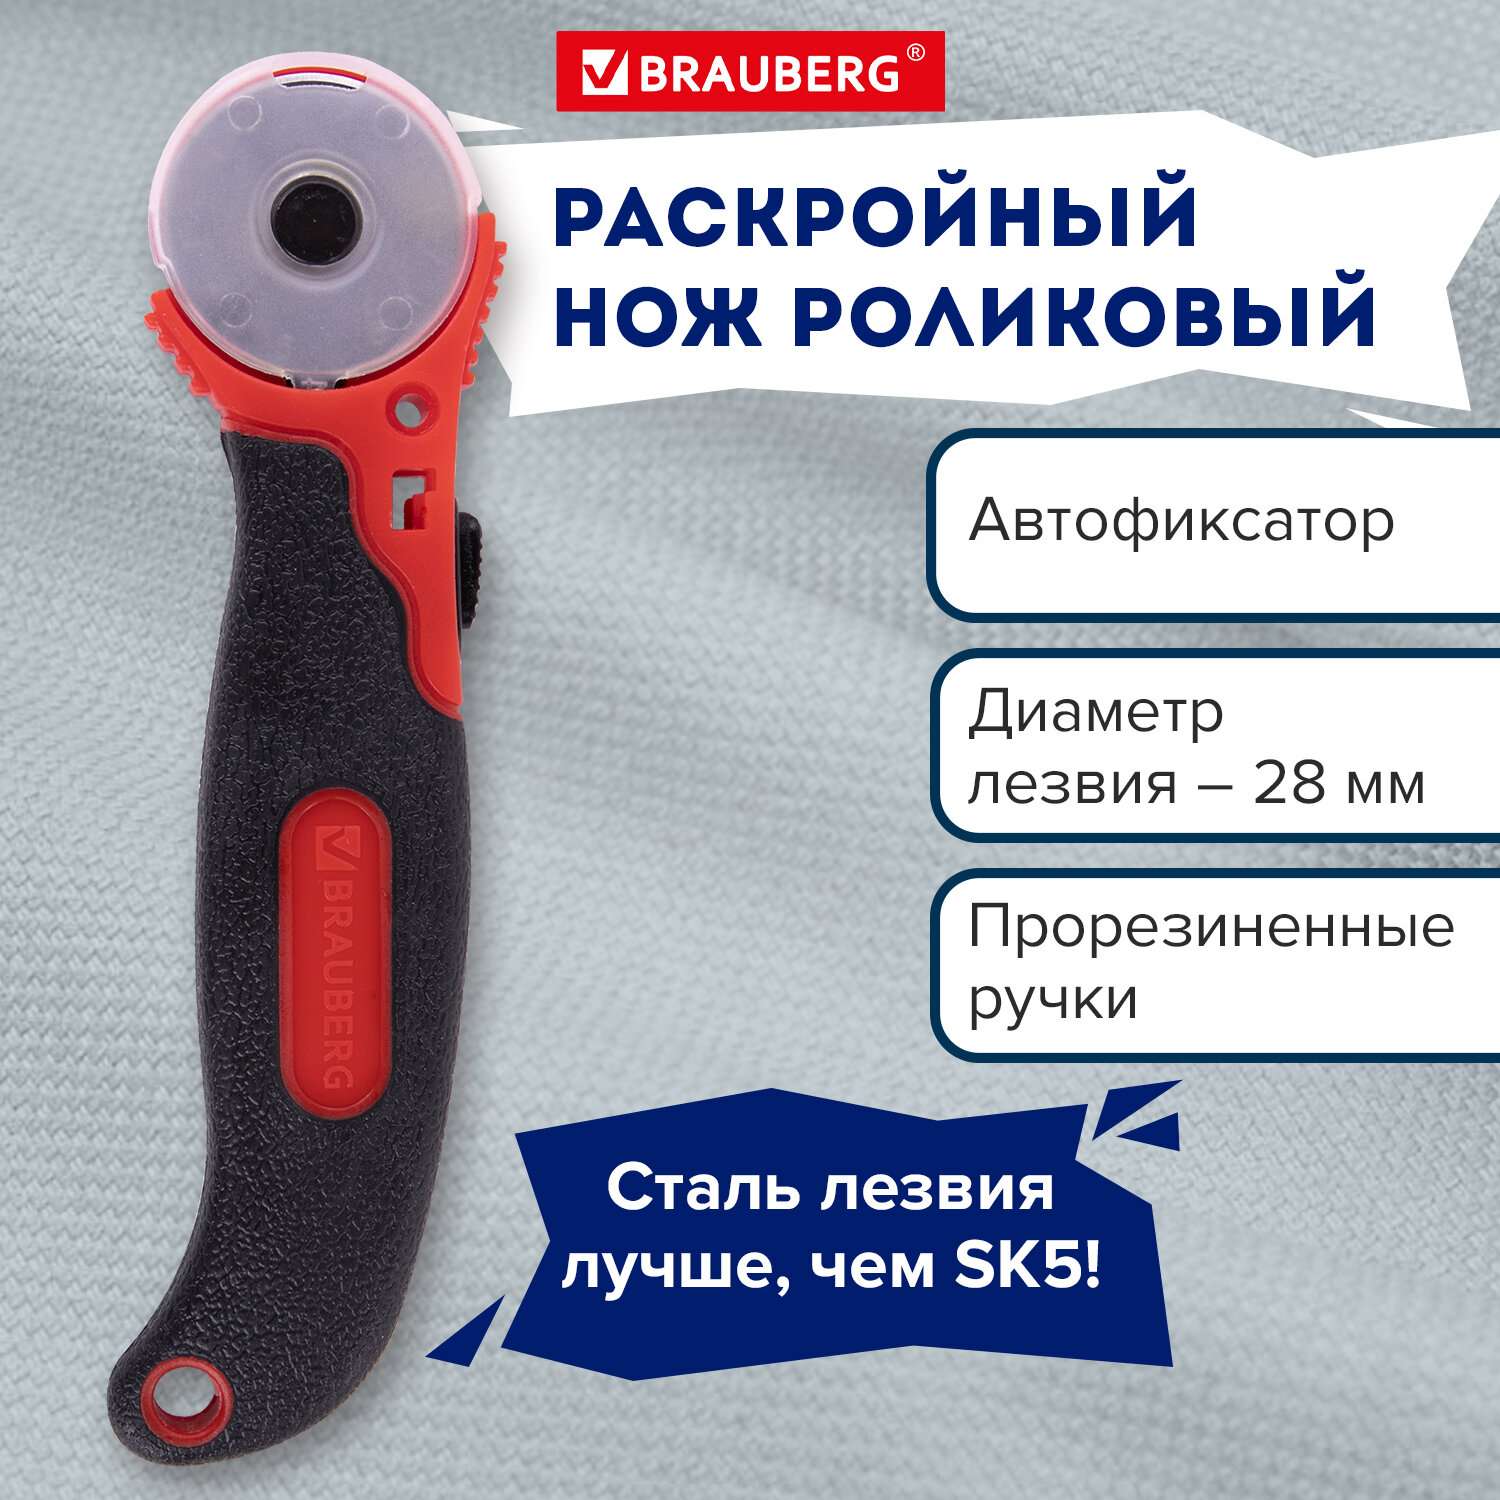 Нож раскройный роликовый Brauberg для рукоделия досуга творчества и шитья 28 мм - фото 1